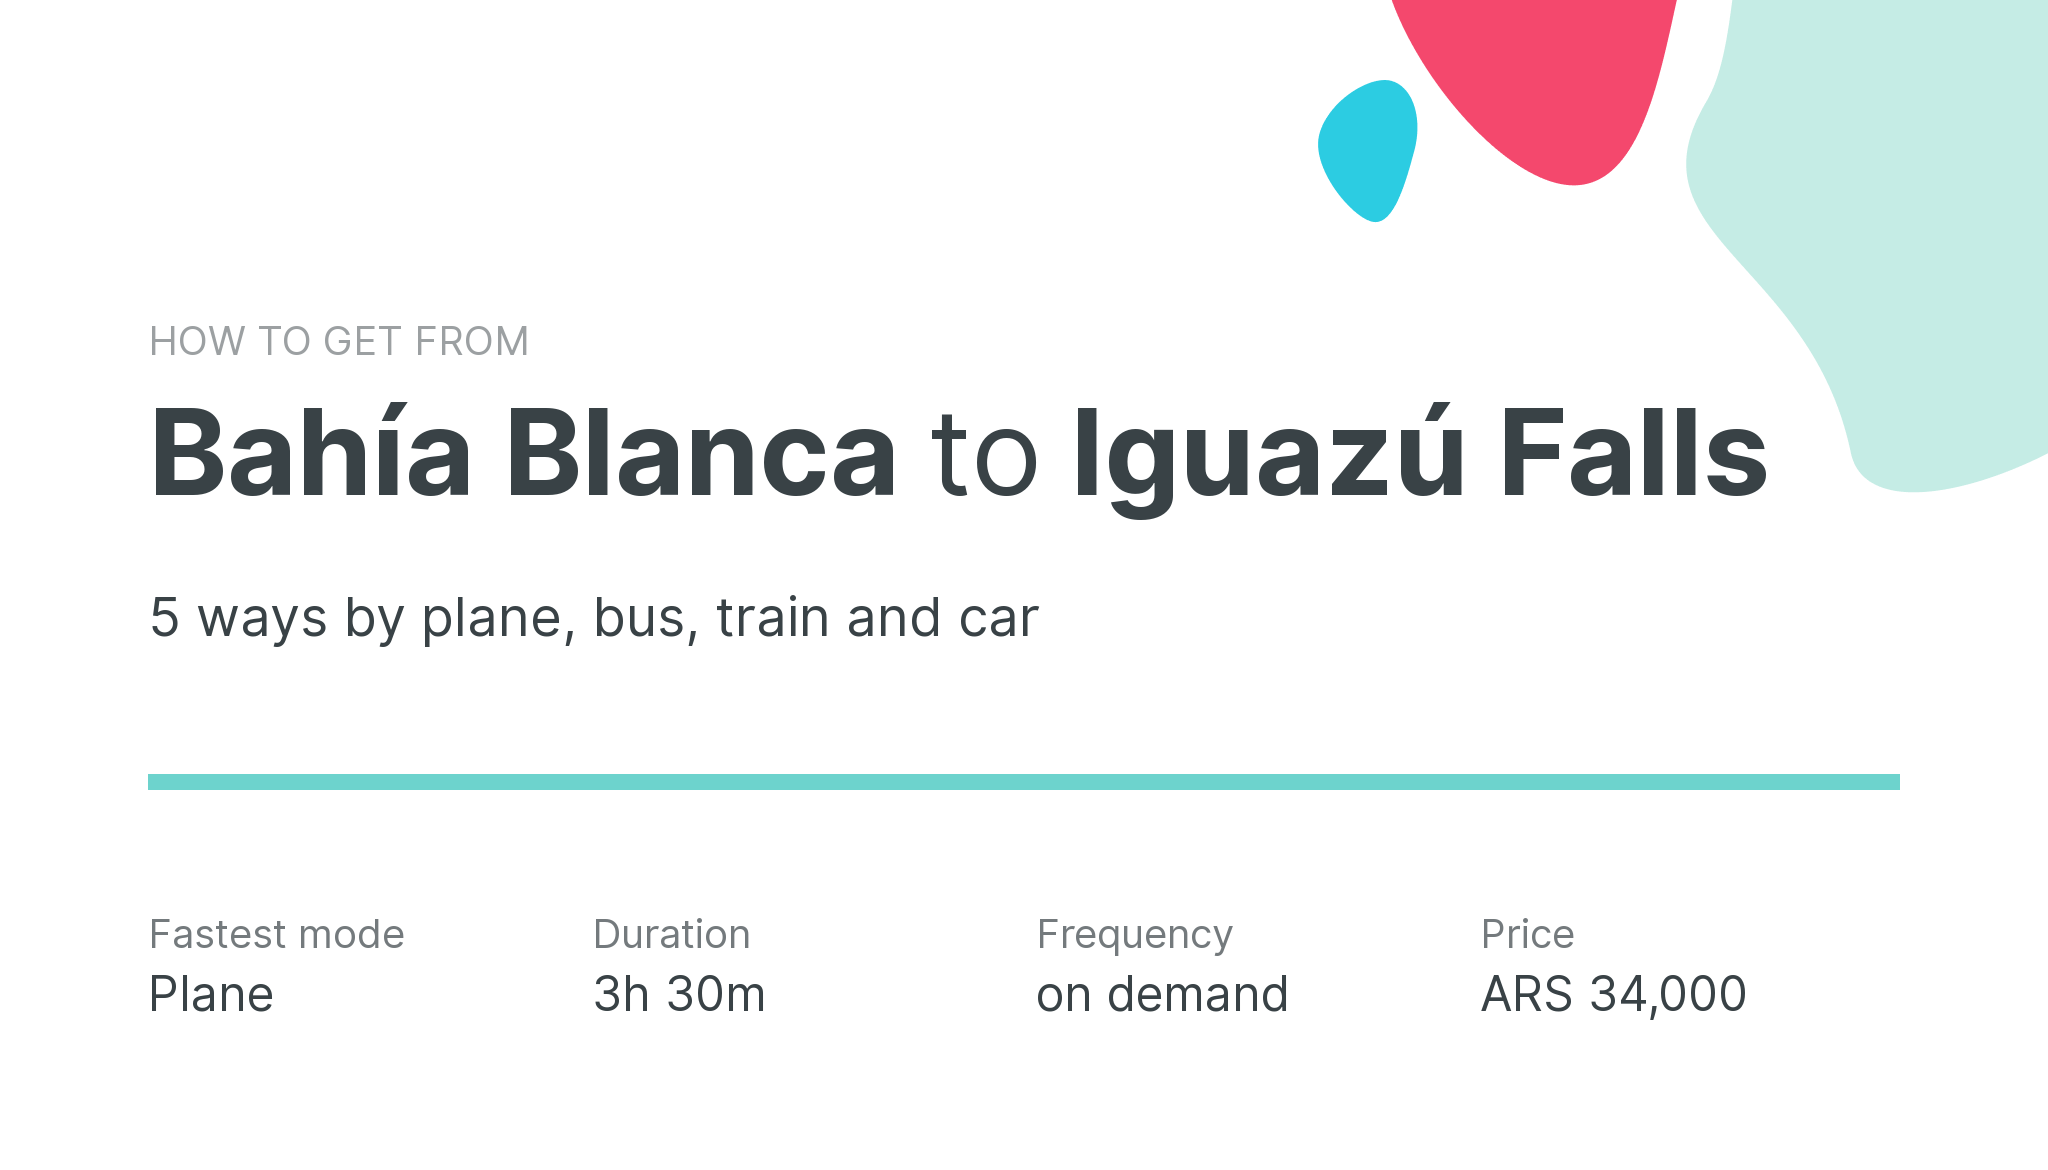 How do I get from Bahía Blanca to Iguazú Falls